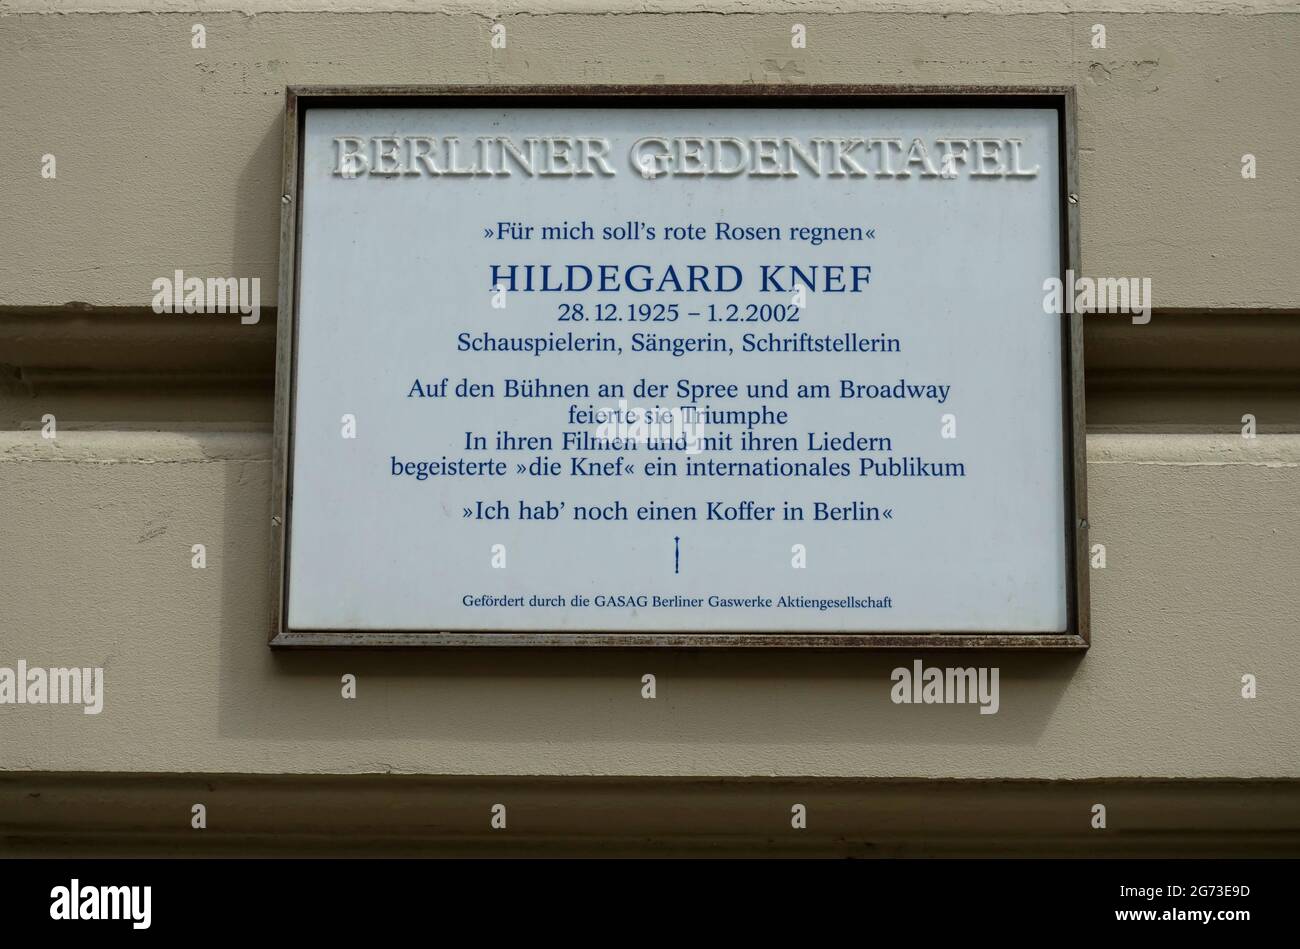 Memorial plaque of Hildegard Knef, Berlin, Germany Stock Photo - Alamy